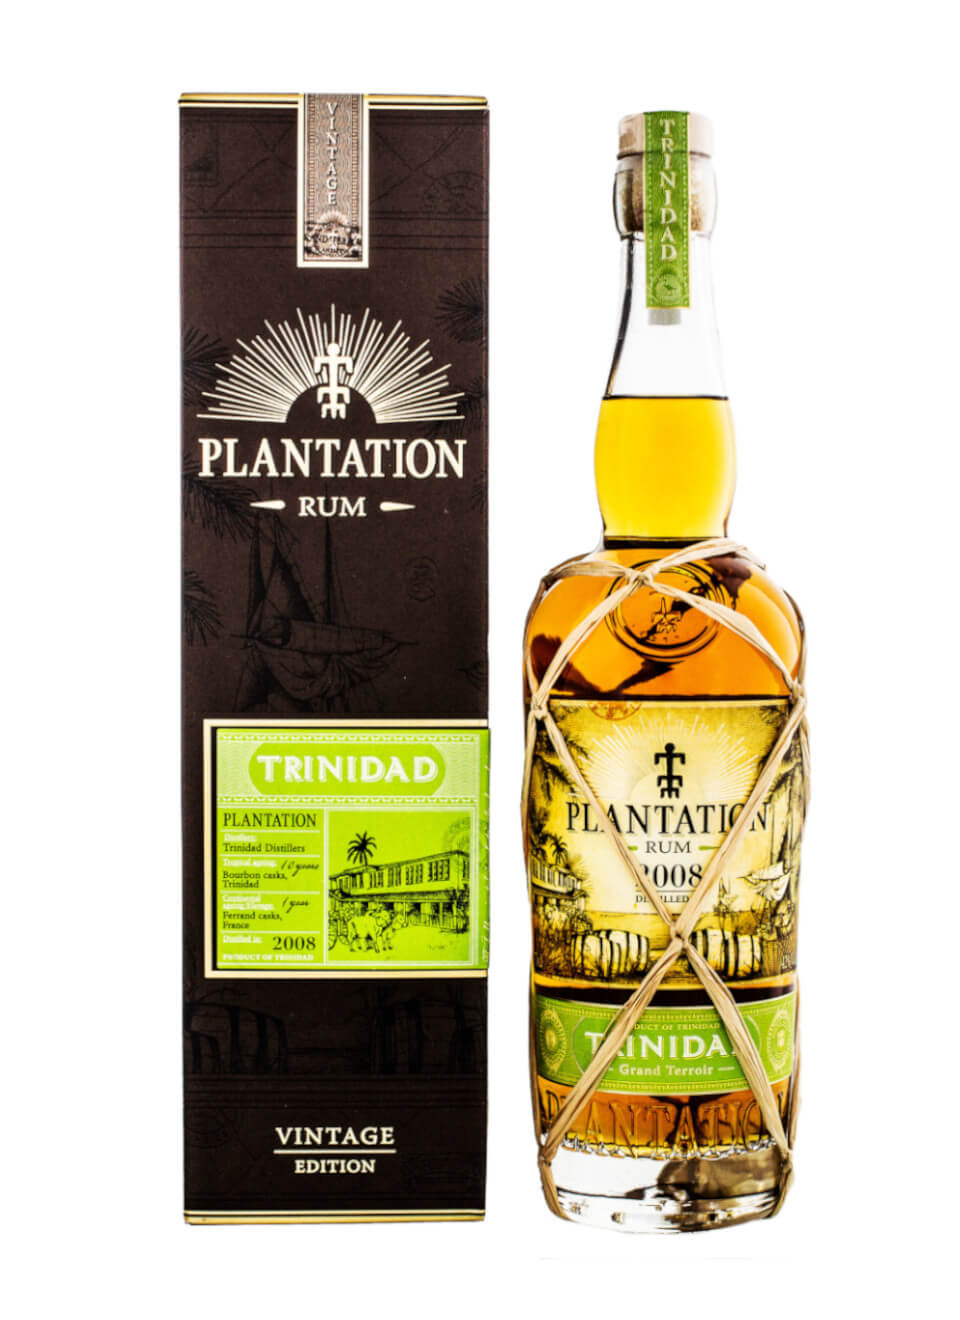 Plantation Rum Trinidad 2008 Vintage Edition 0,7 L